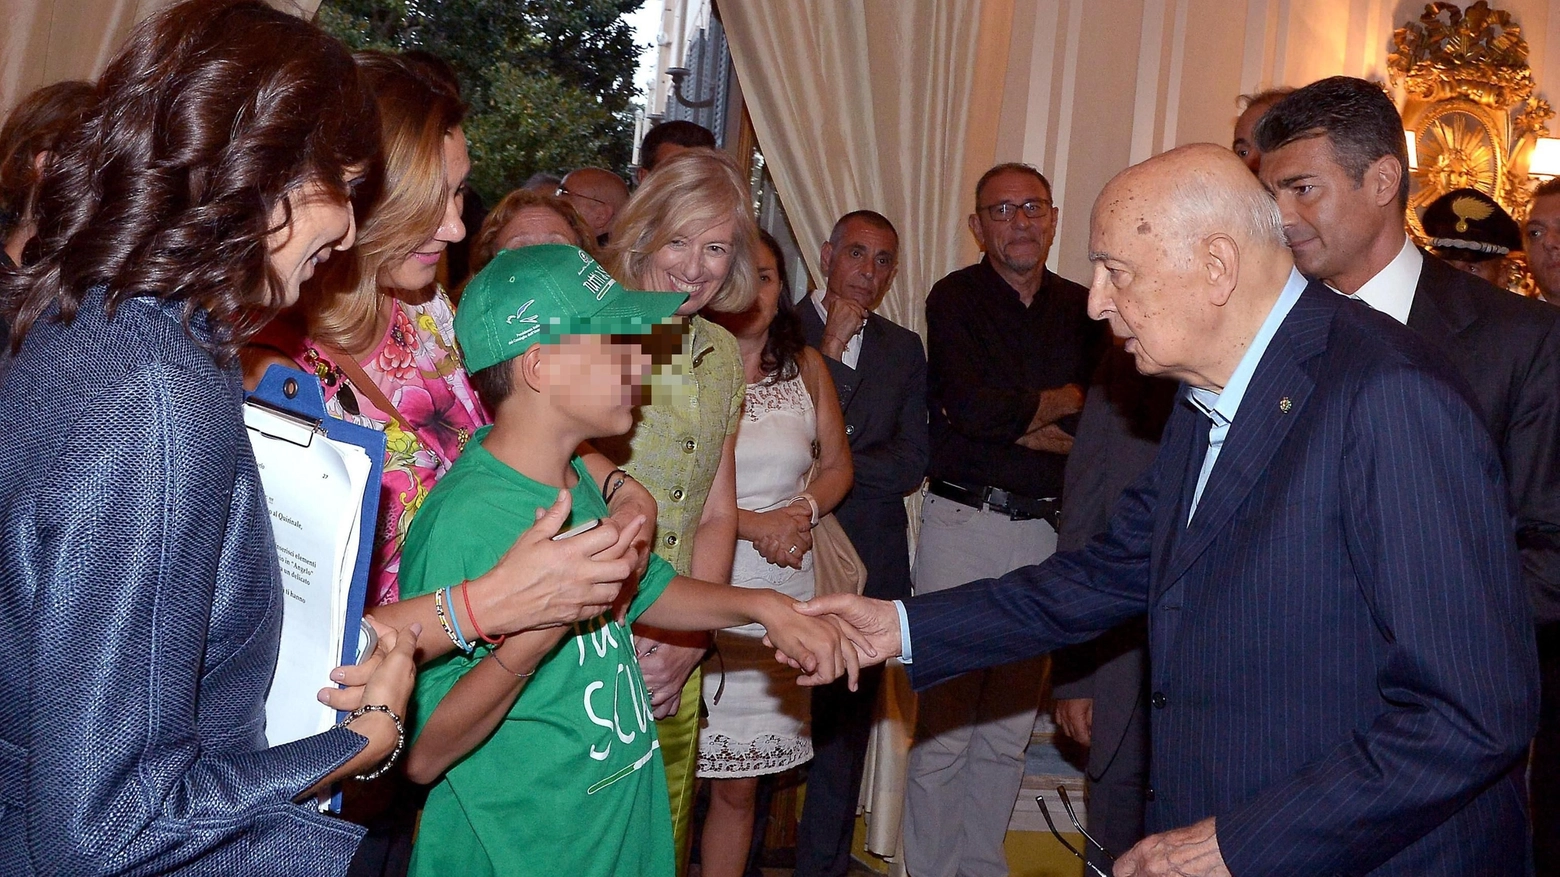 Il presidente Napolitano incontra studente autistico (Ansa)